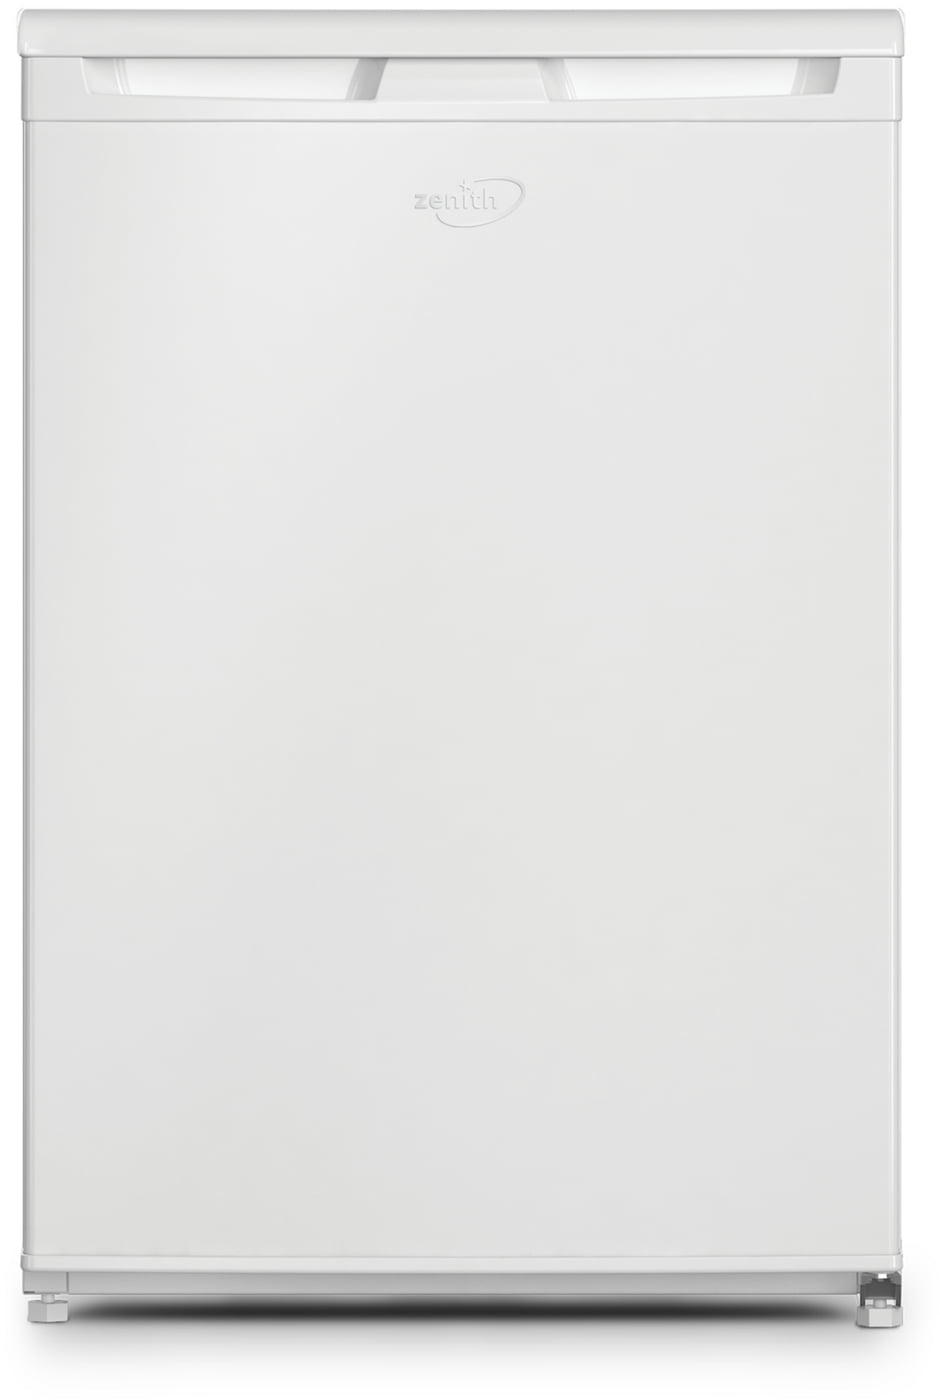 Zenith ZFS4584W 54cm Freezer - White